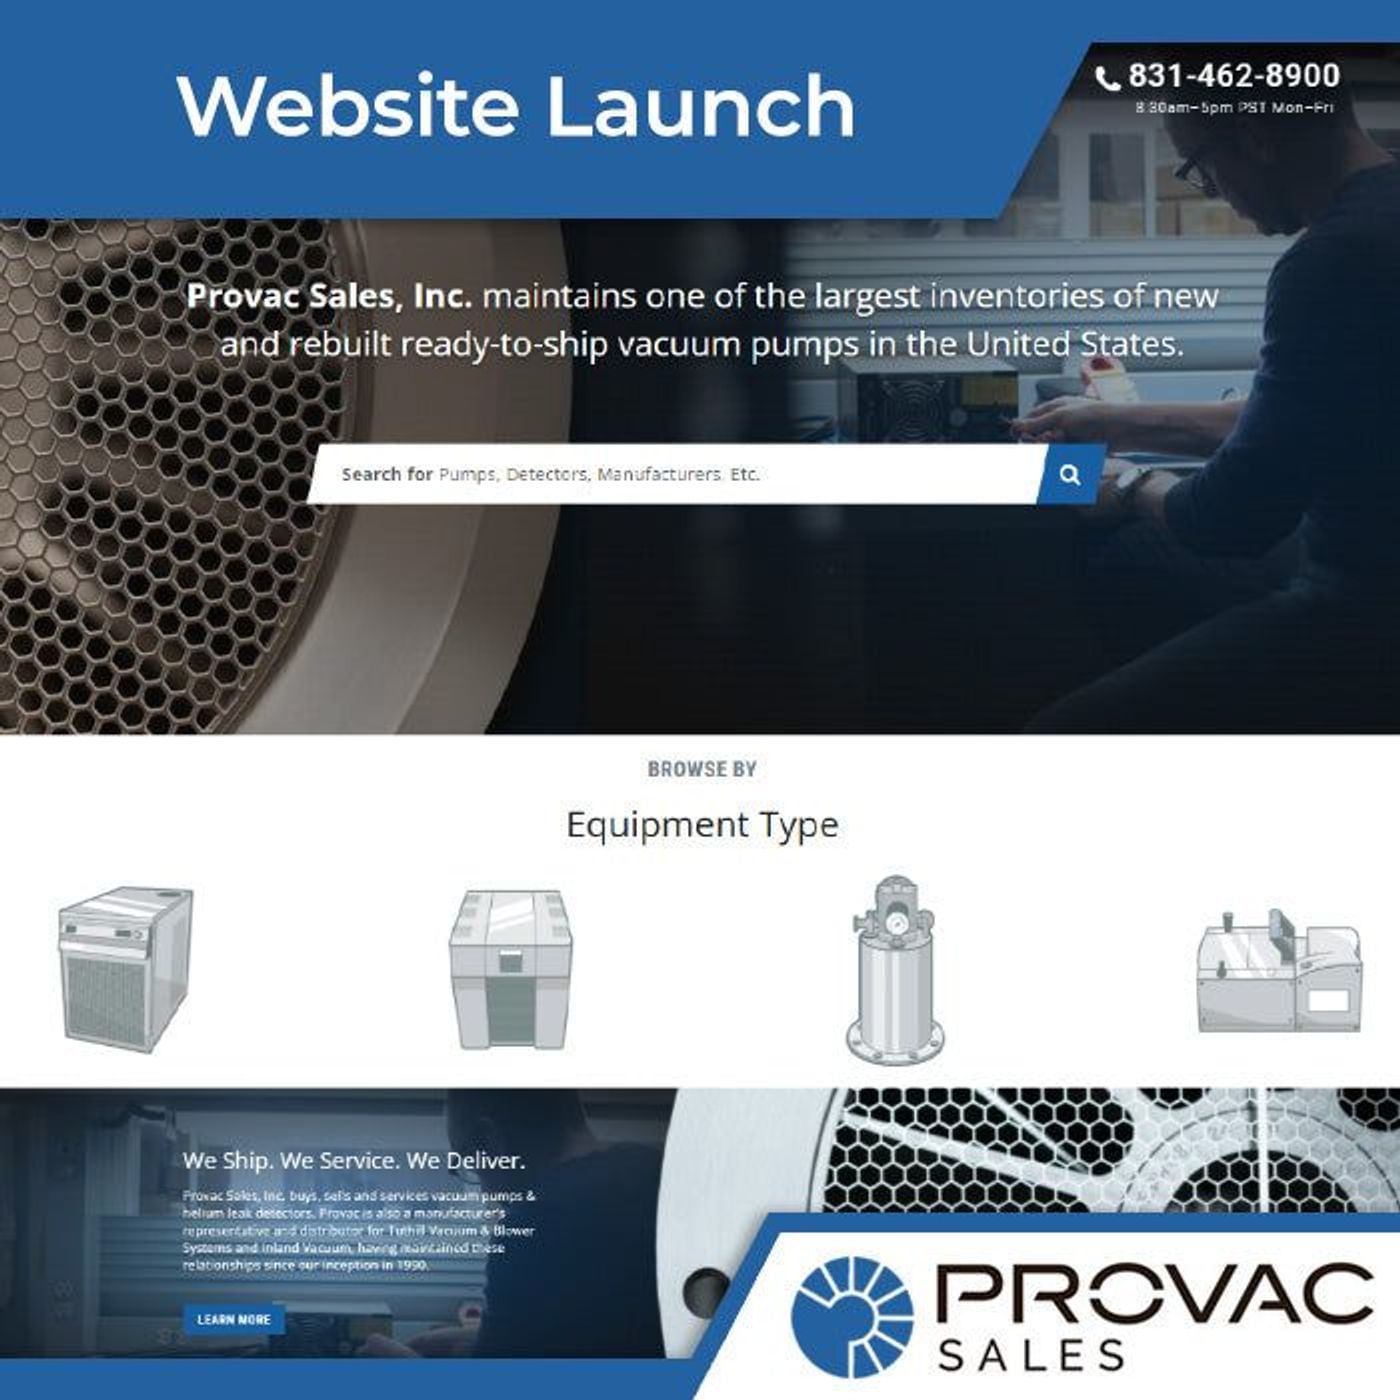 Provac Sales, Inc. Announces Website Launch